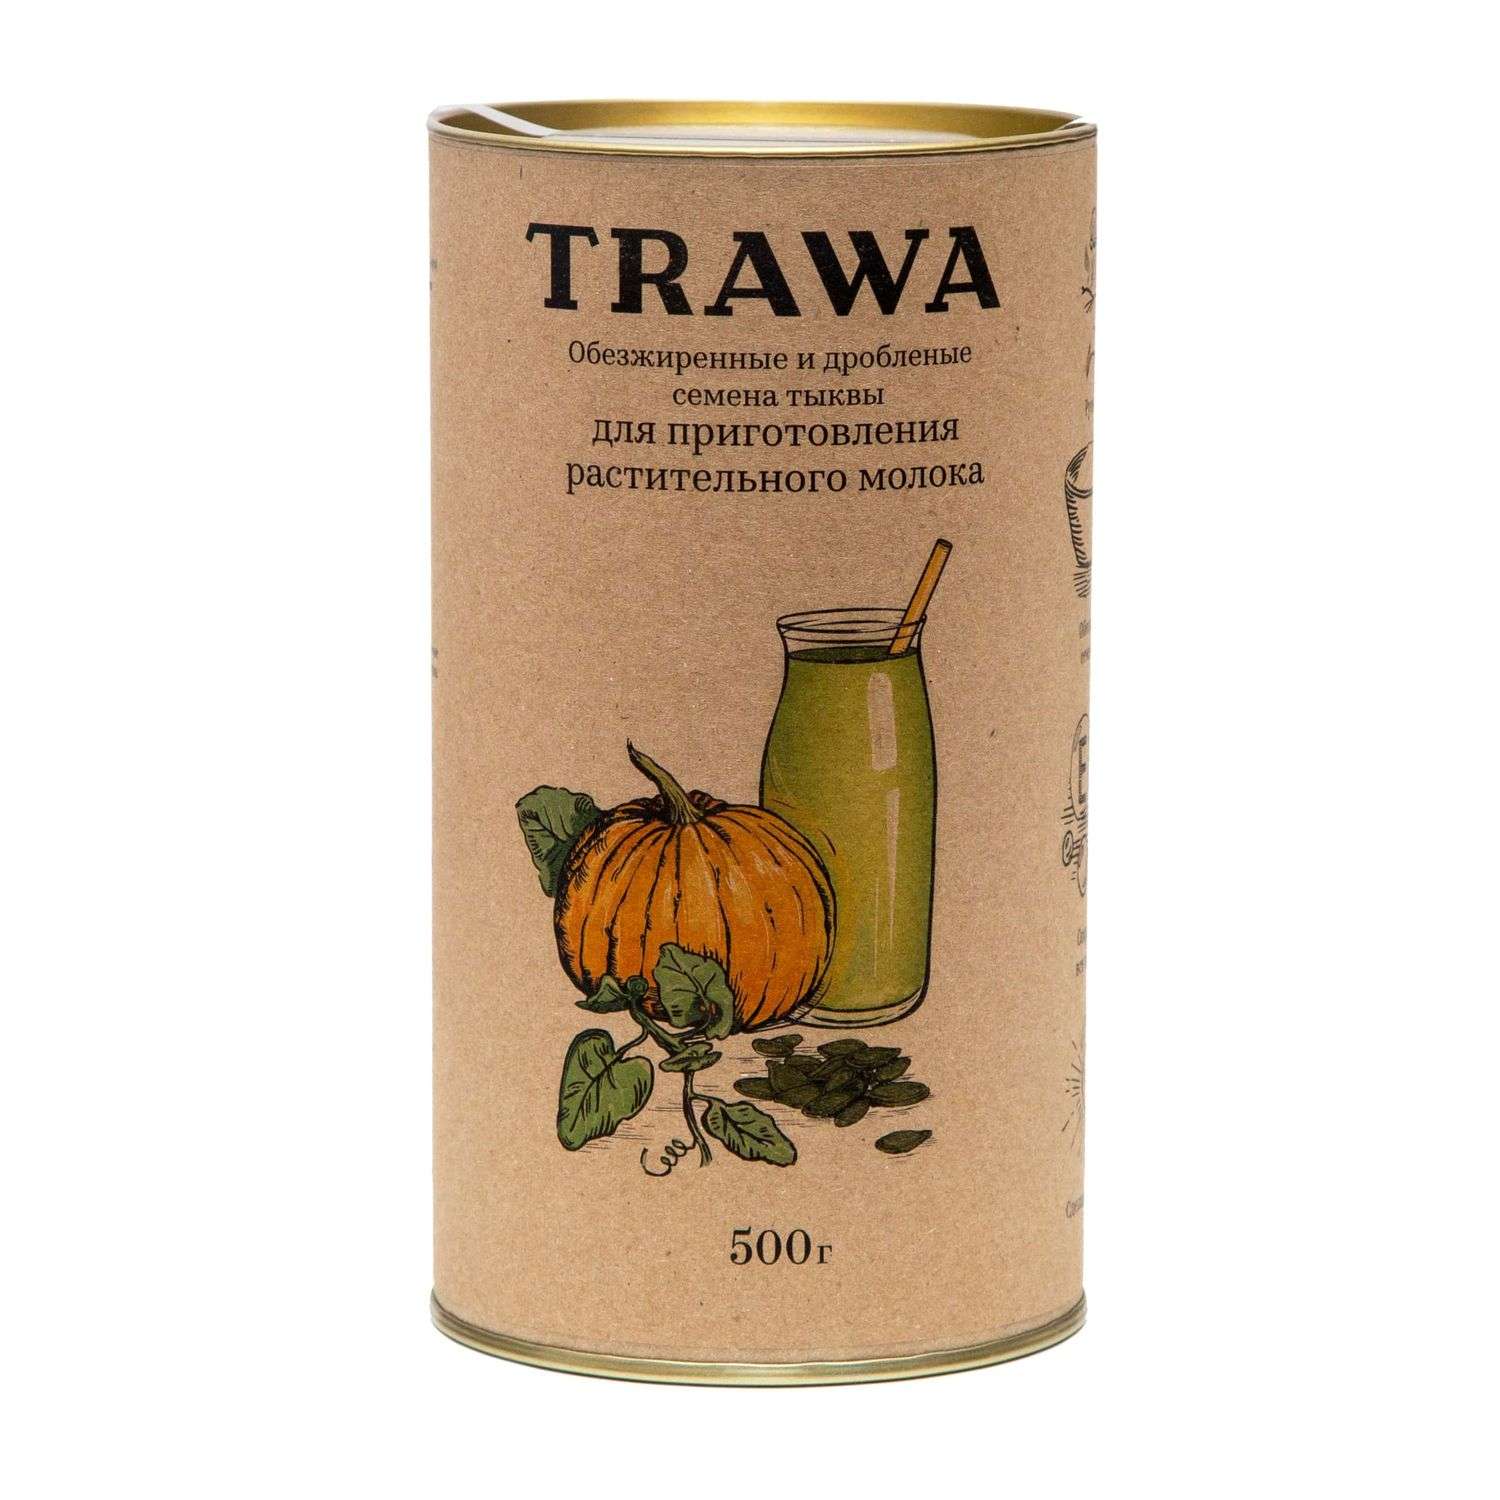 Семена тыквы TRAWA обезжиренные дробленые 500г - фото 1